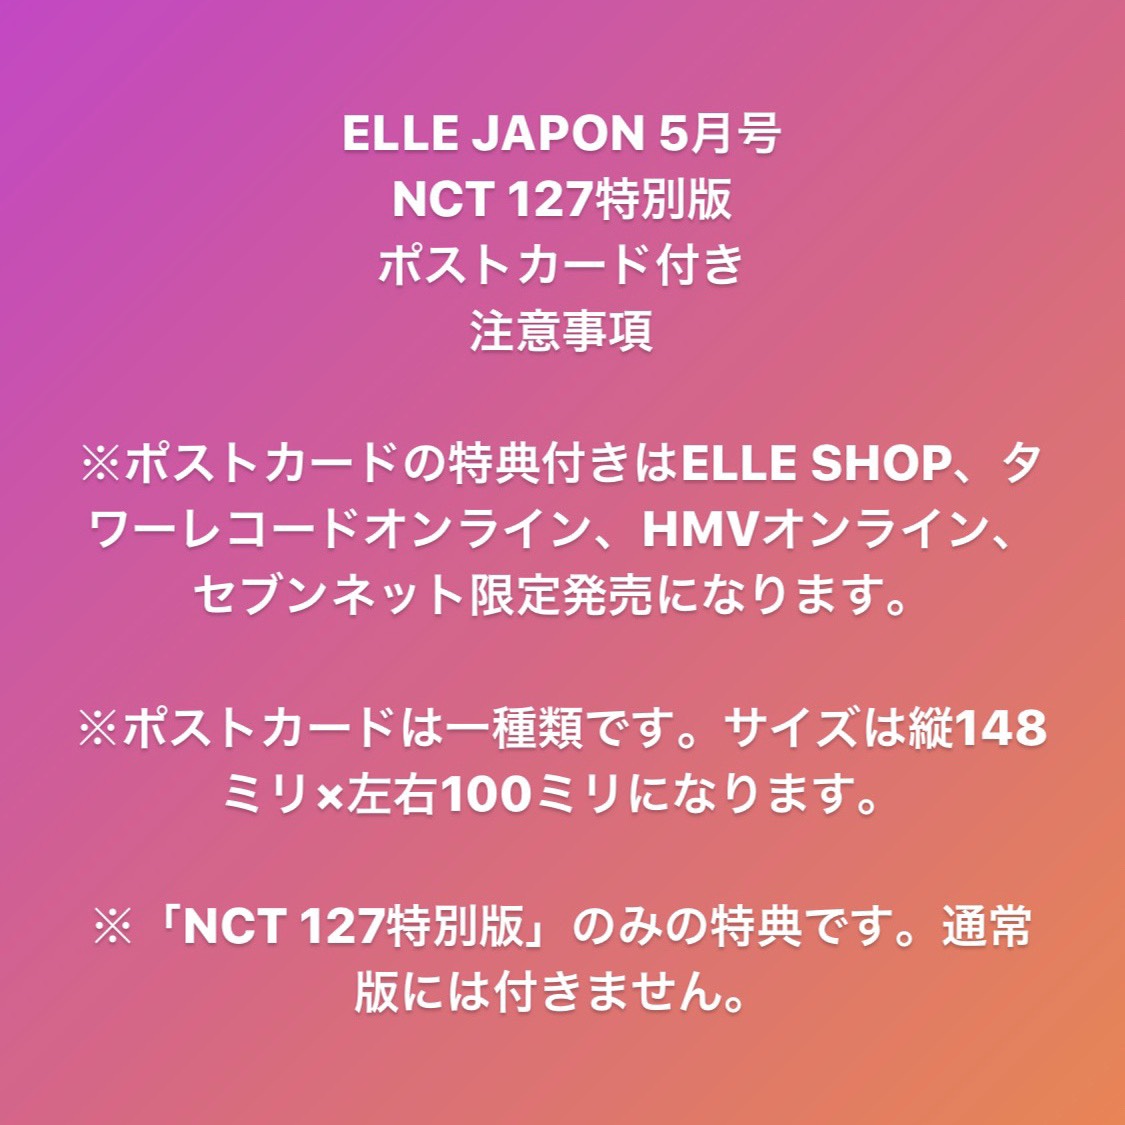 Elle Japan 21年3月27日 土 発売の エル ジャポン 5月号特別版では韓国の人気グループ Nct 127が表紙を飾るだけでなく 通常版より拡大バージョンで彼らの魅力を特集 さらに 一部オンライン店舗限定で ポストカードの特典つきも登場 Nct127